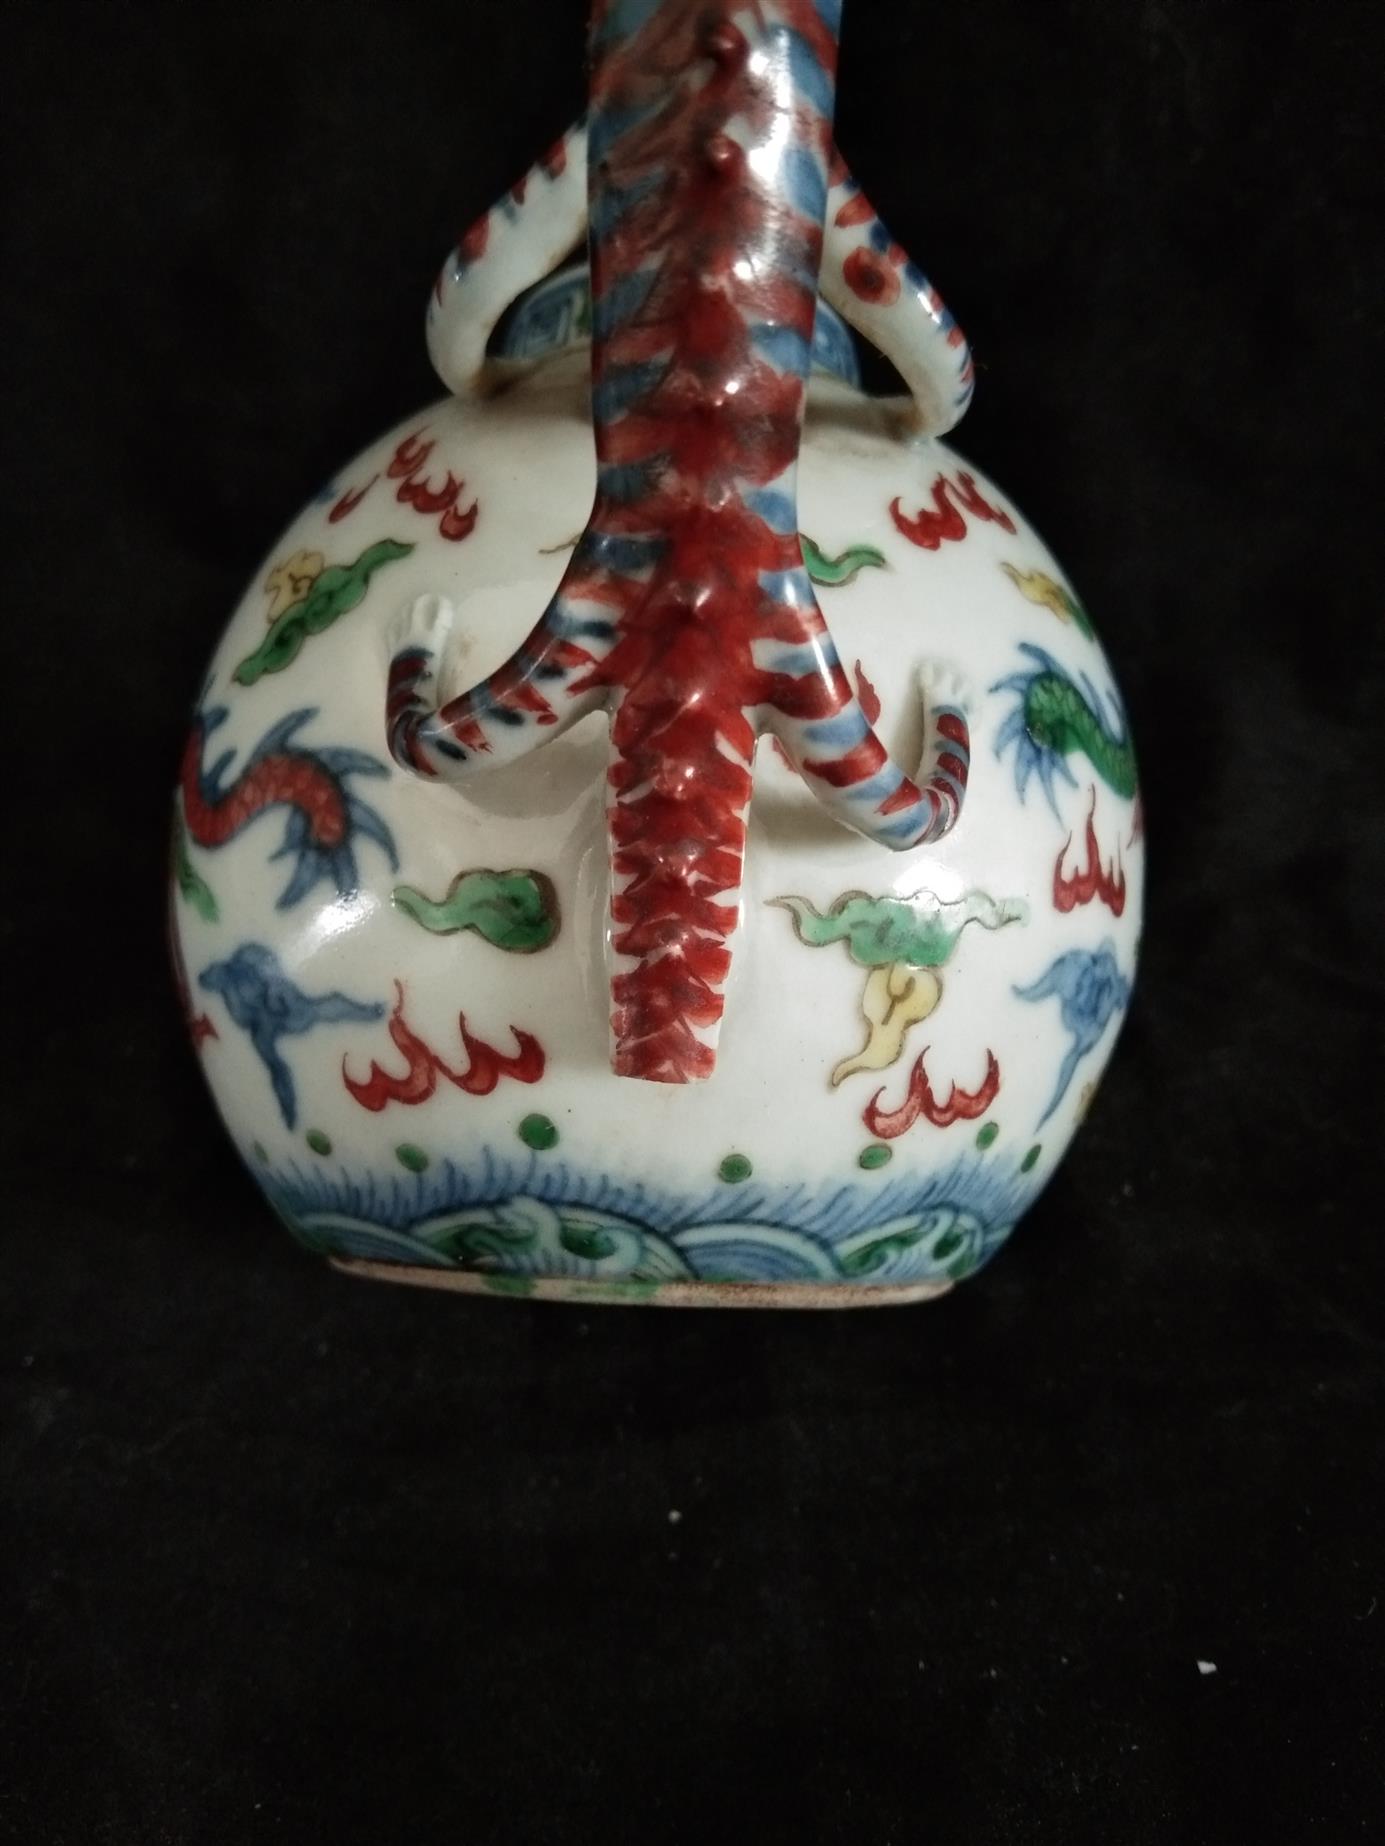 广州茶壶龙把无痕修复技术 南京美瓷工艺品有限公司